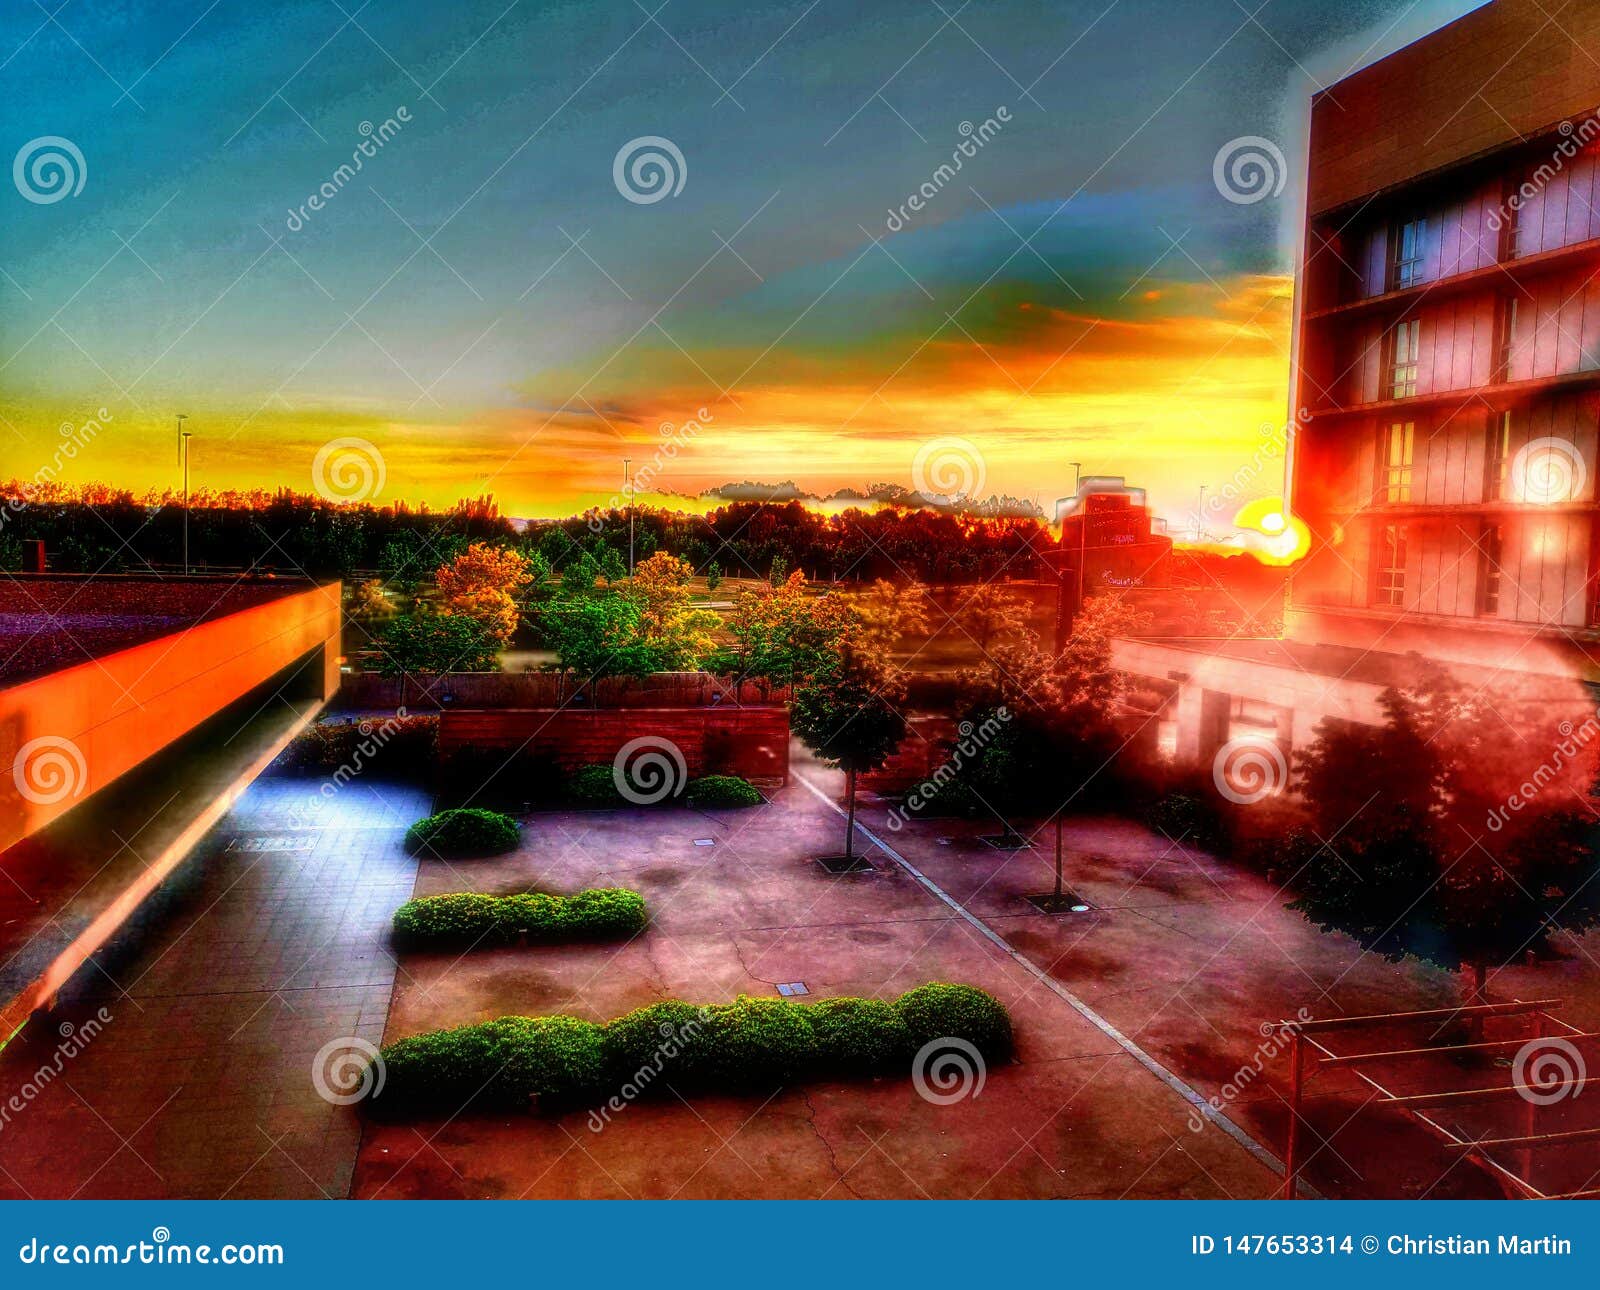 Golden Morning Sunset in Spain Stock Photo - Image of morning, golden ...